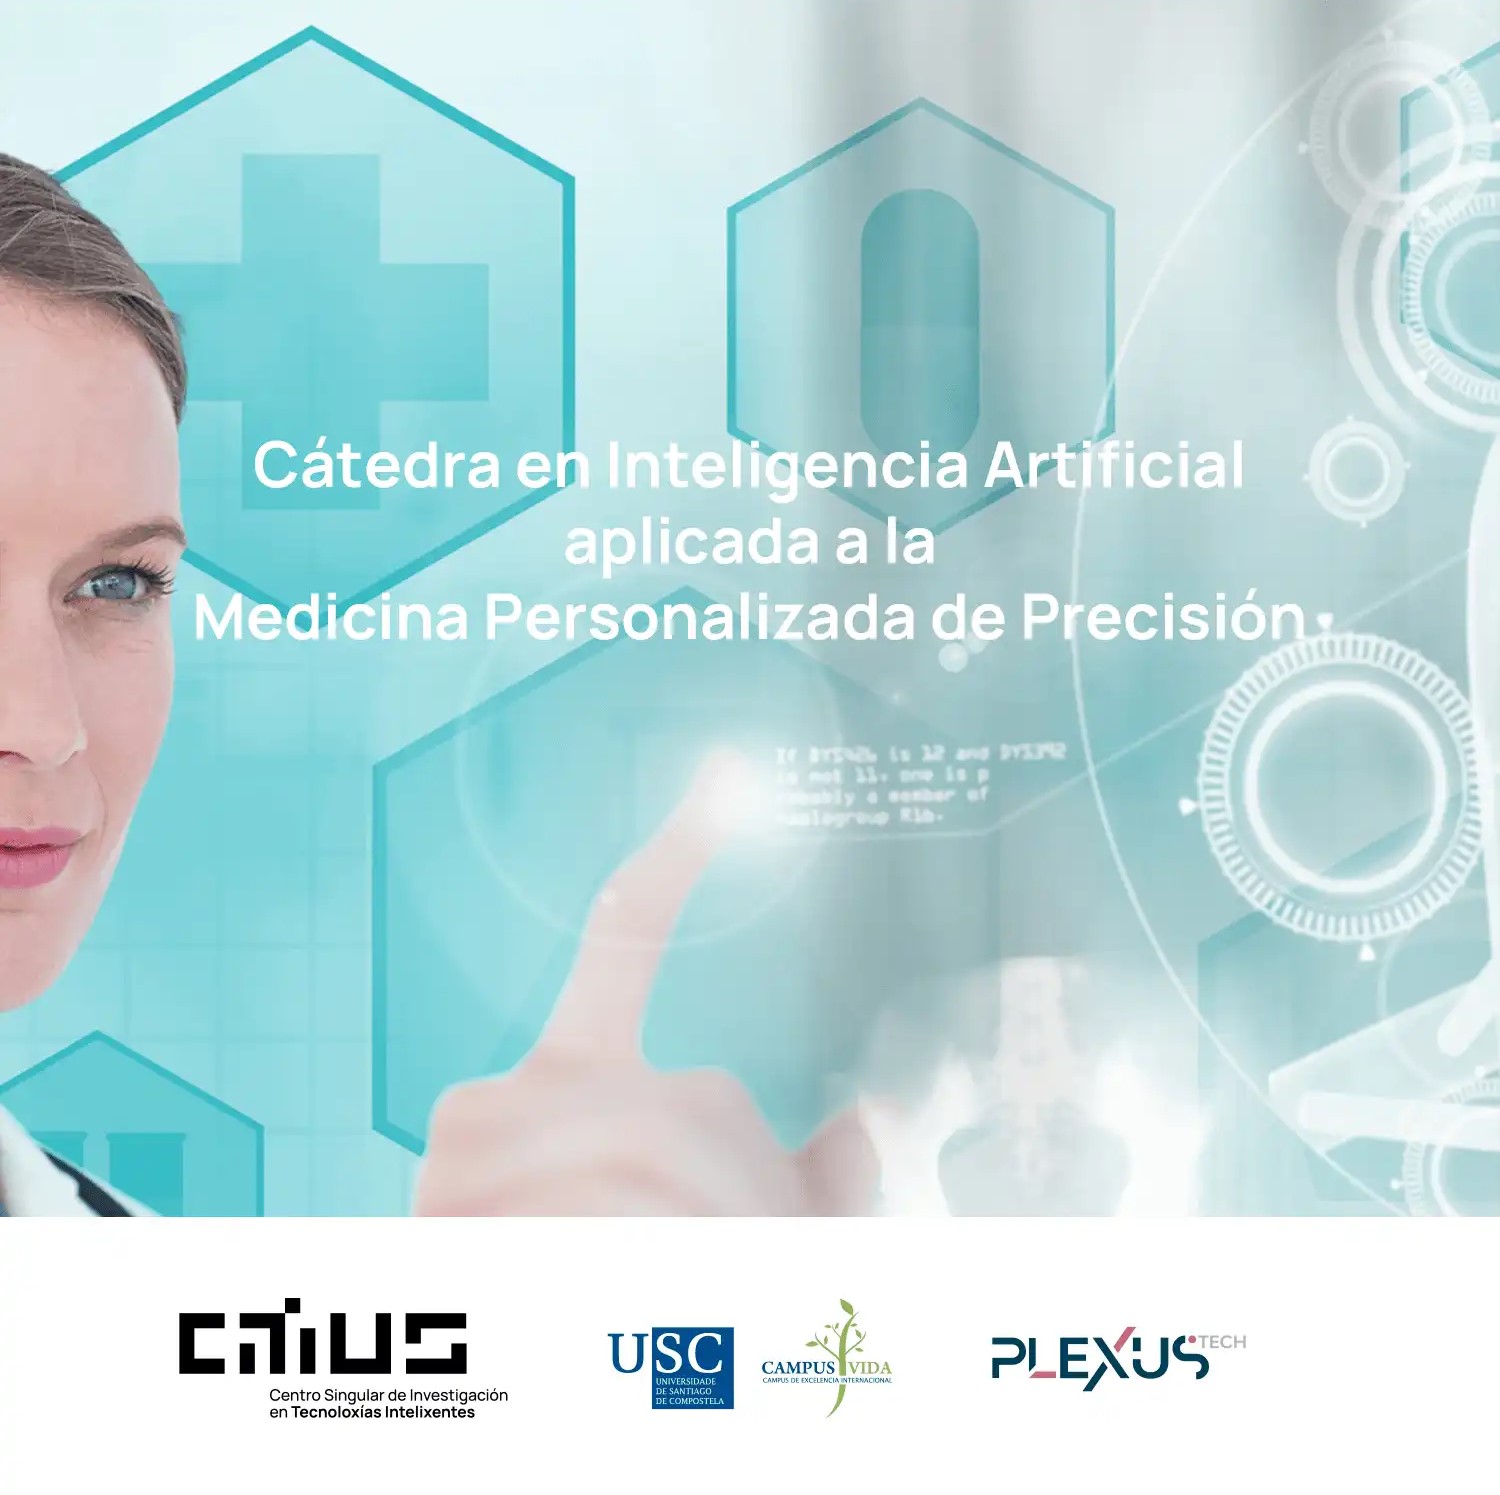 La Universidad de Santiago de Compostela contará con una Cátedra de Inteligencia Artificial en Medicina Personalizada de Precisión, financiada por el Estado y la tecnológica Plexus Tech